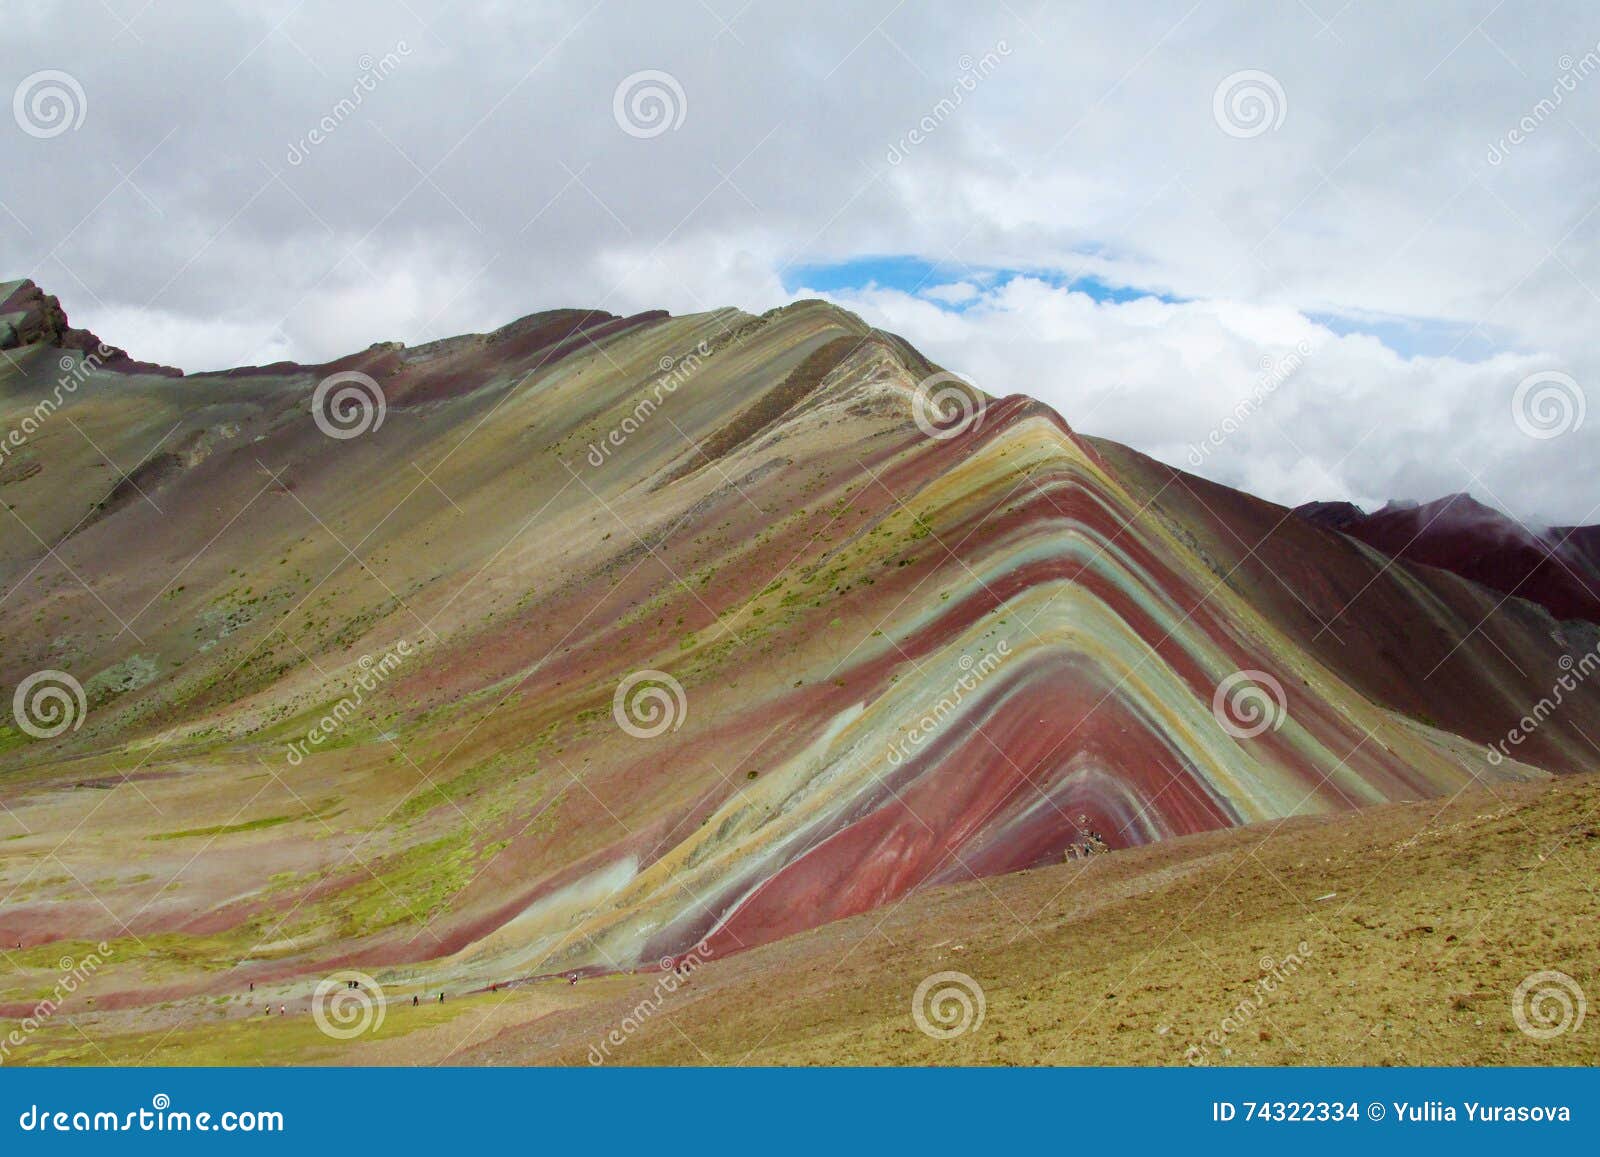 montana de siete colores near cuzco